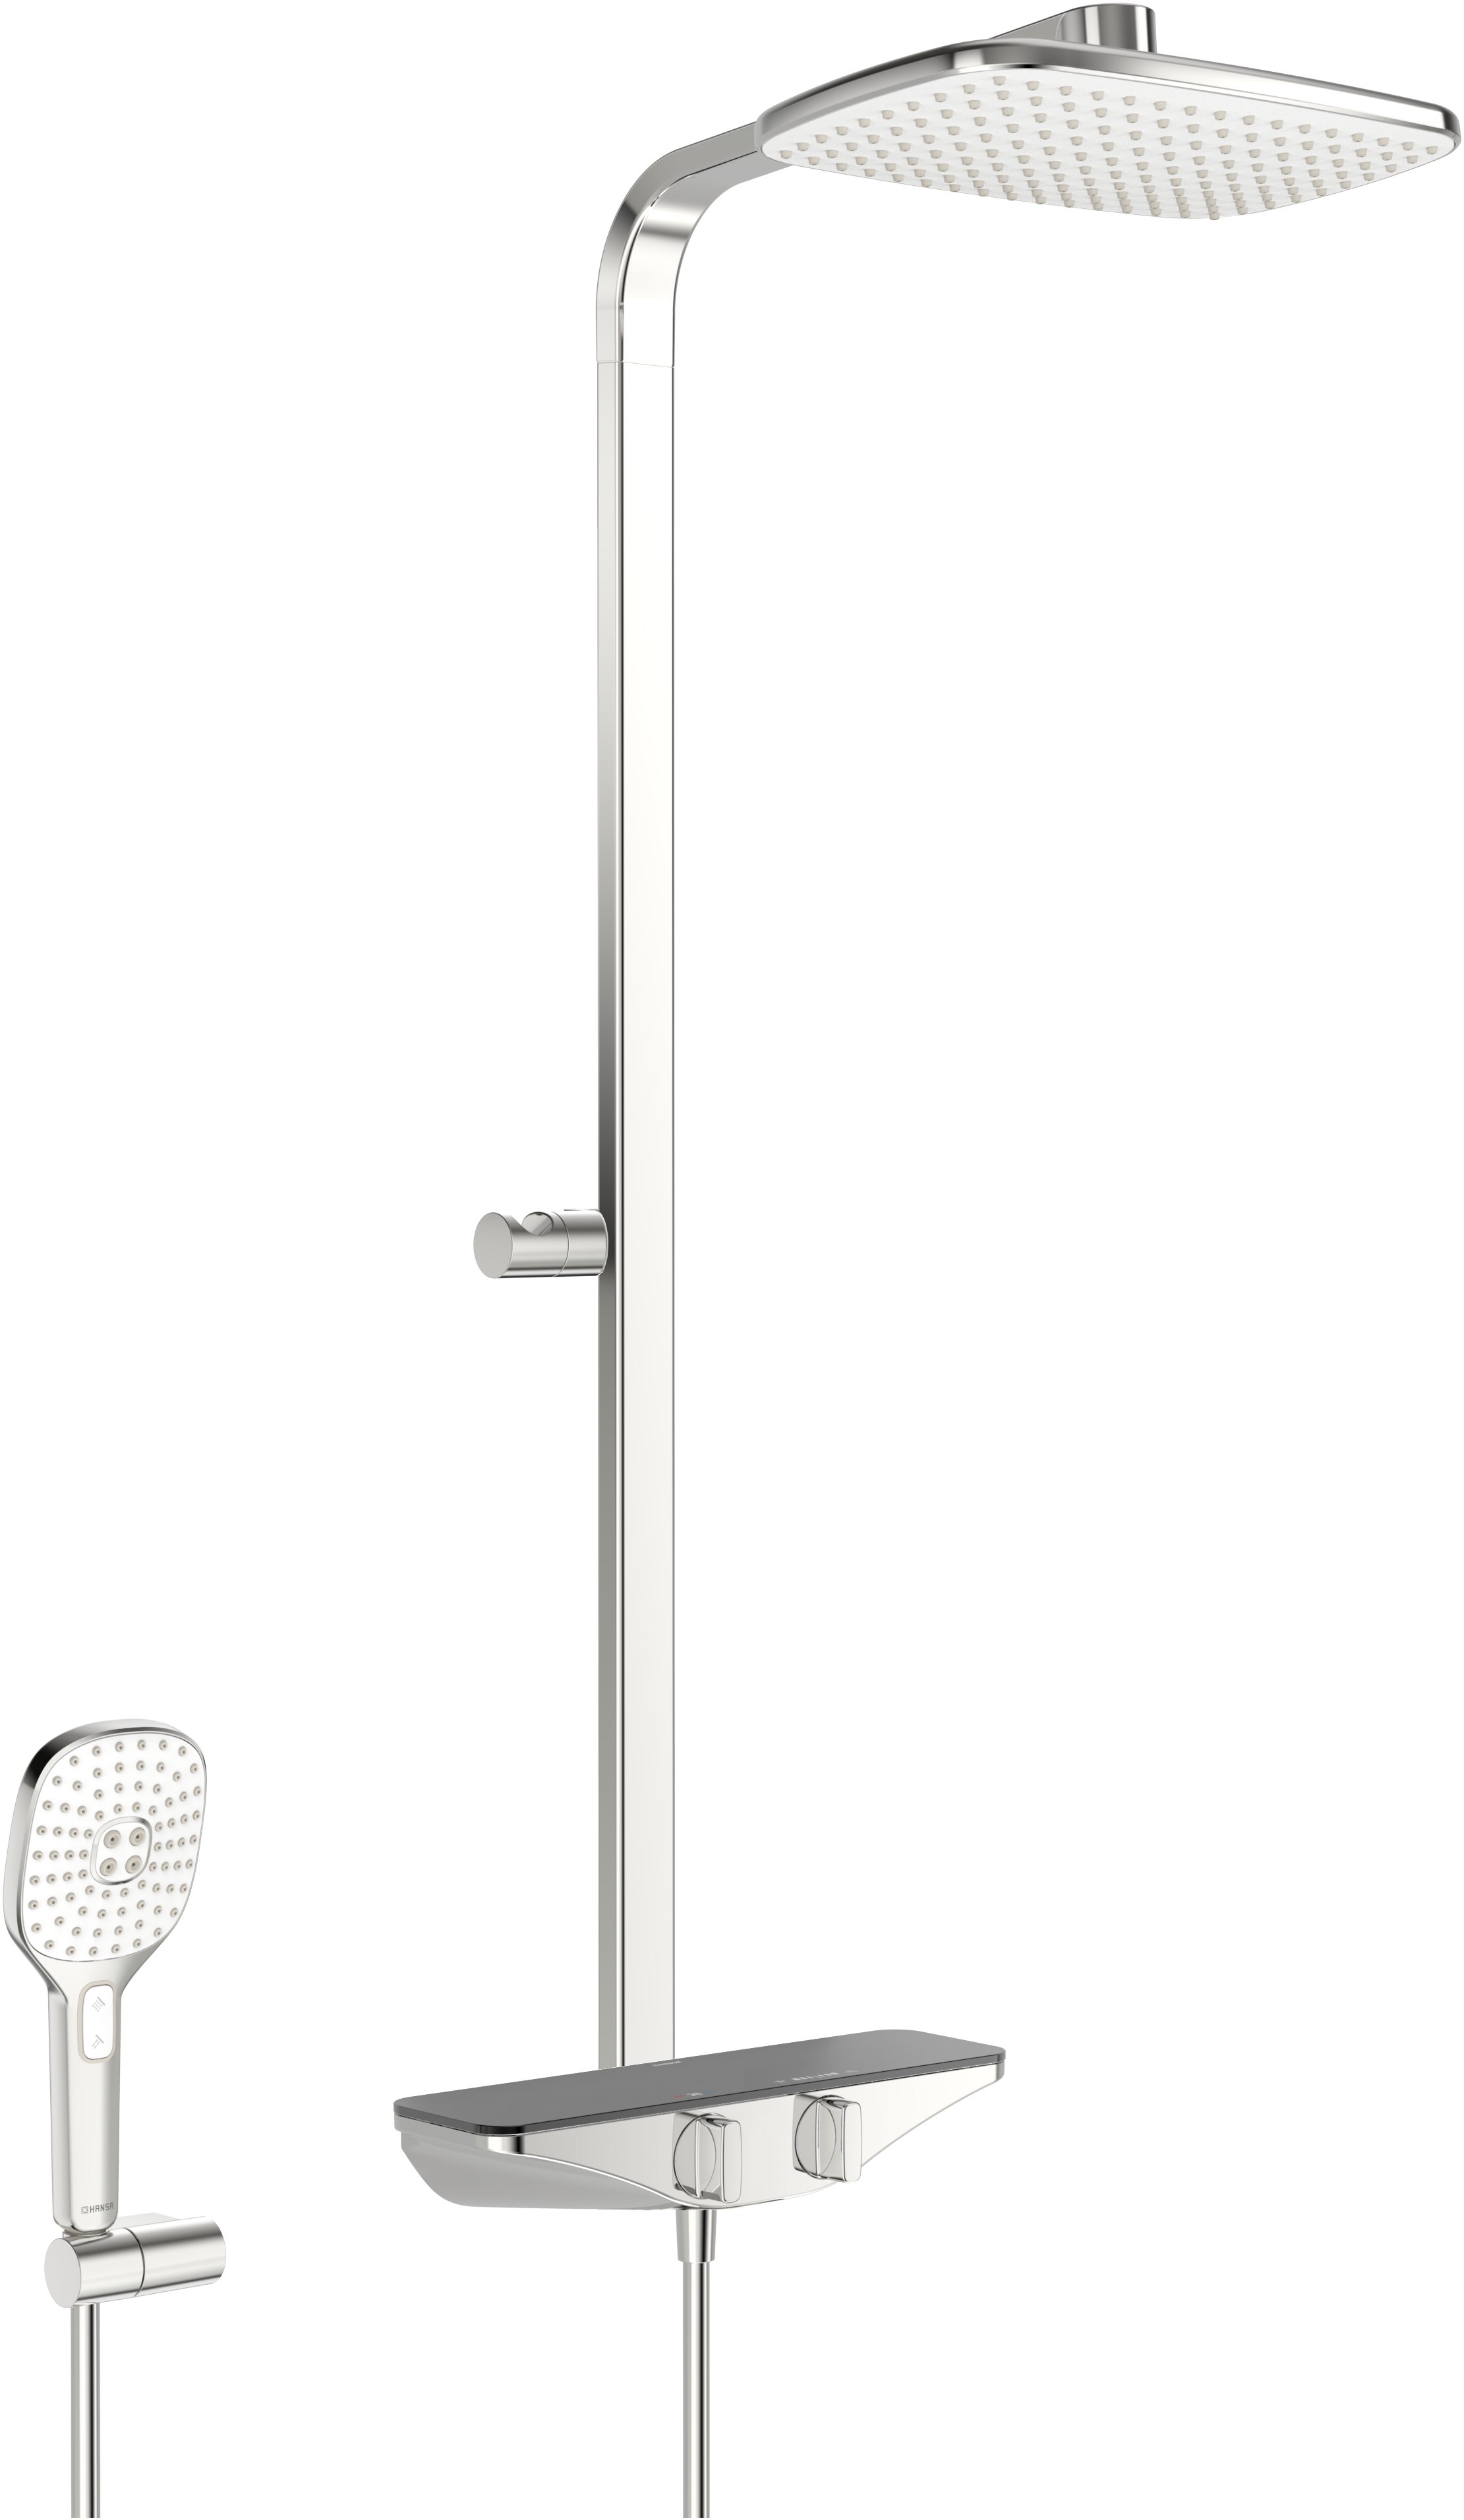 Hansa Hansaemotion sprchový systém - nástěnná termostatická sprchová baterie, polička antracit 5865017184